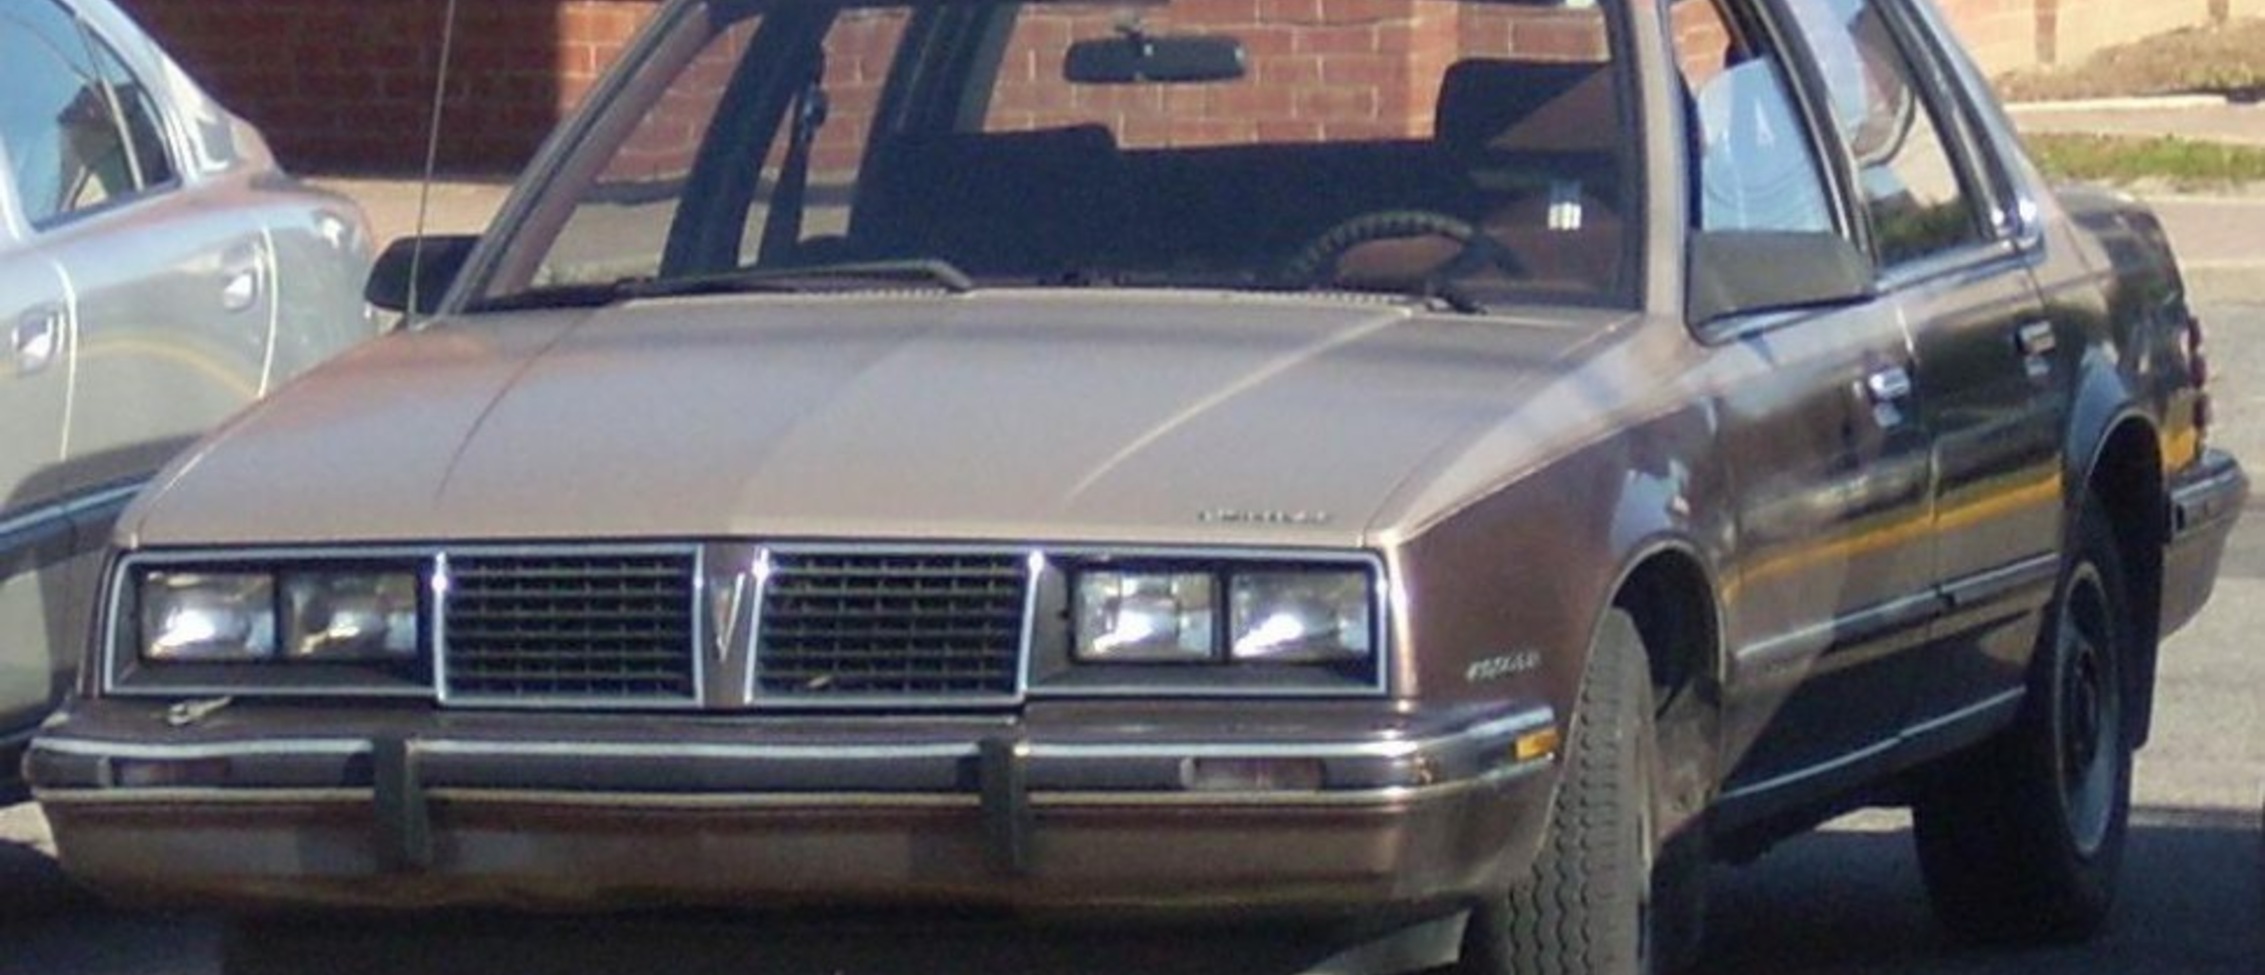 Pontiac 6000 3.1 i V6 (141 Hp) 1988, 1989, 1990, 1991 